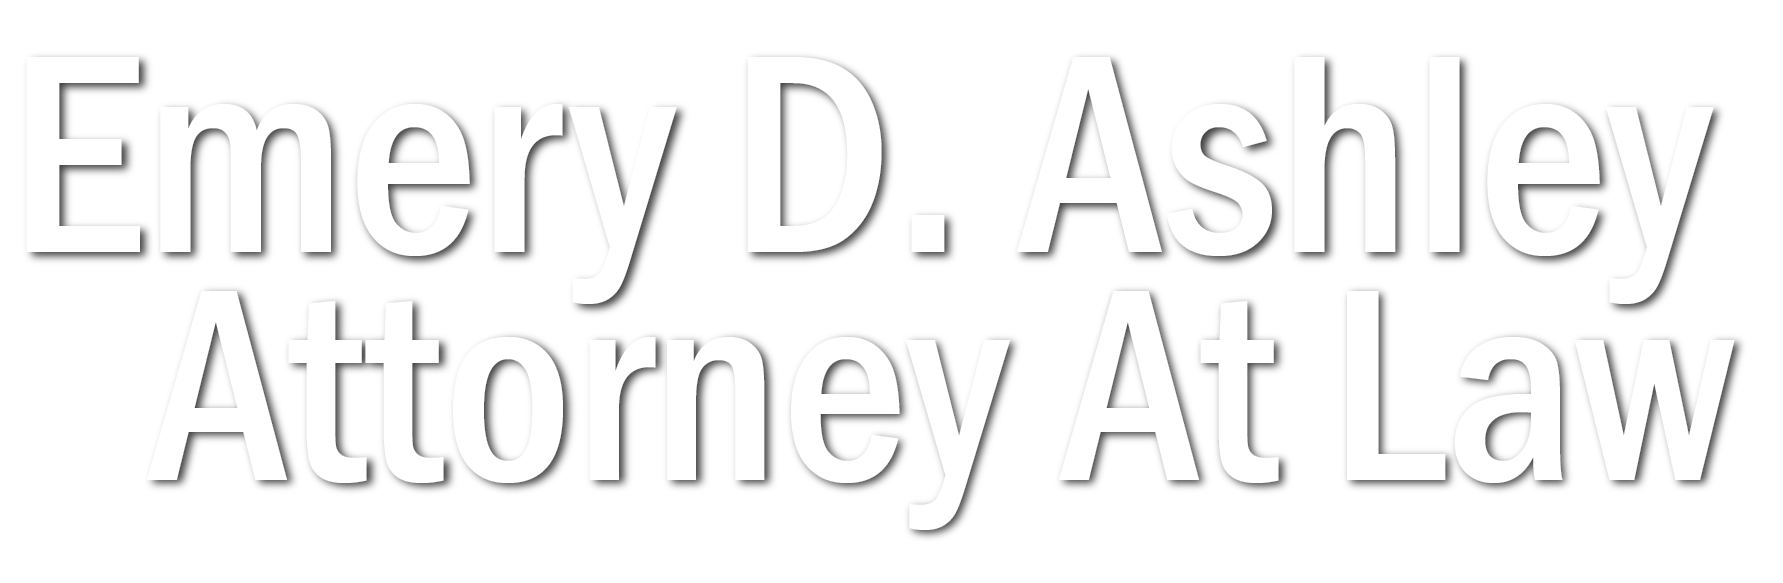 Emery D. Ashley Attorney At Law